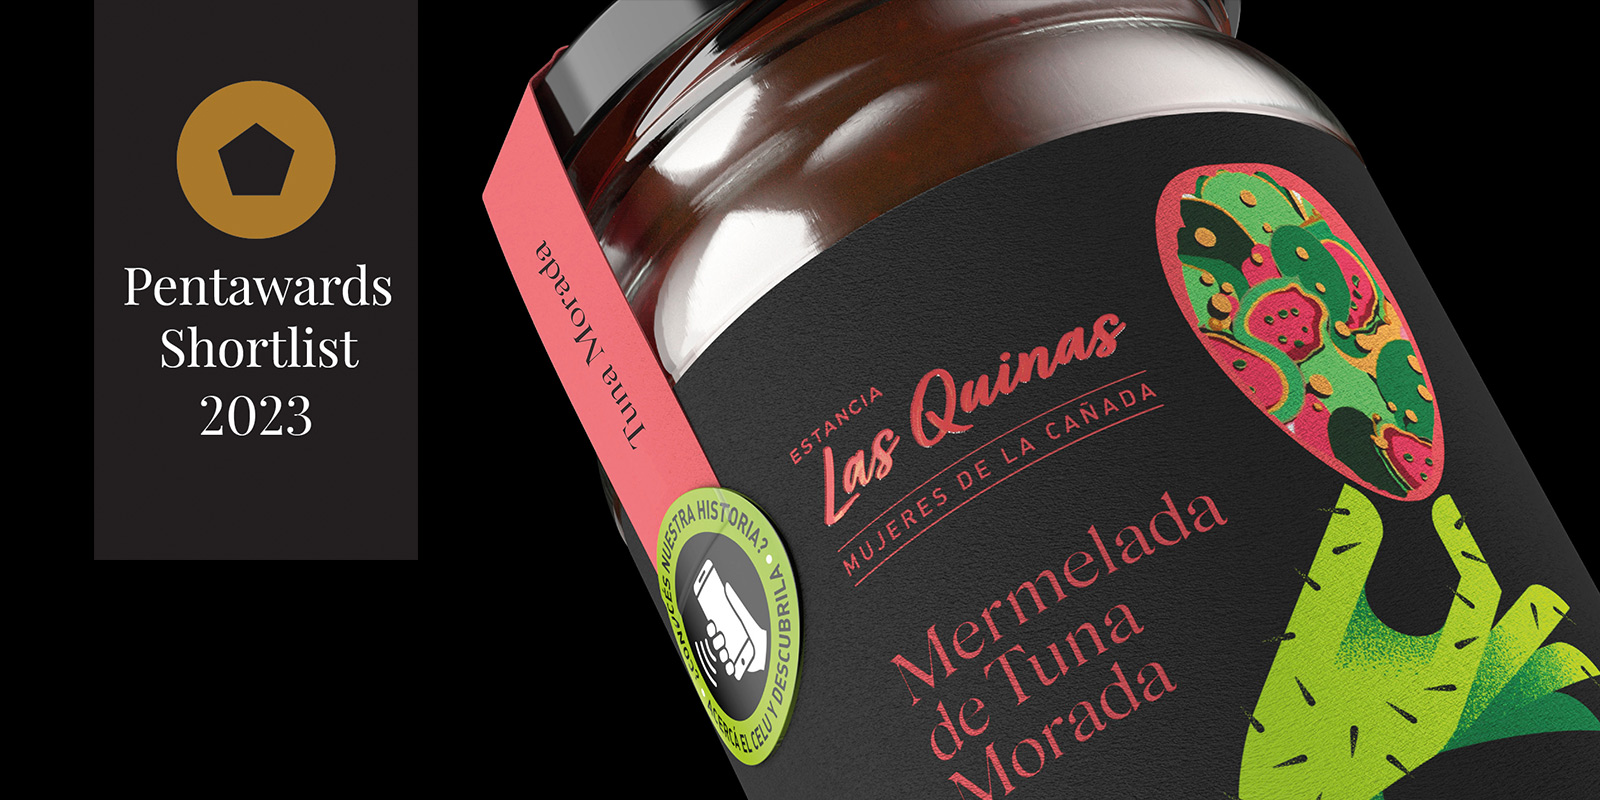 Close-up de frasco de mermelada de tuna Las Quinas. Leyenda destacada “Pentawards Shortlist 2023. Diseño por Tridimage.